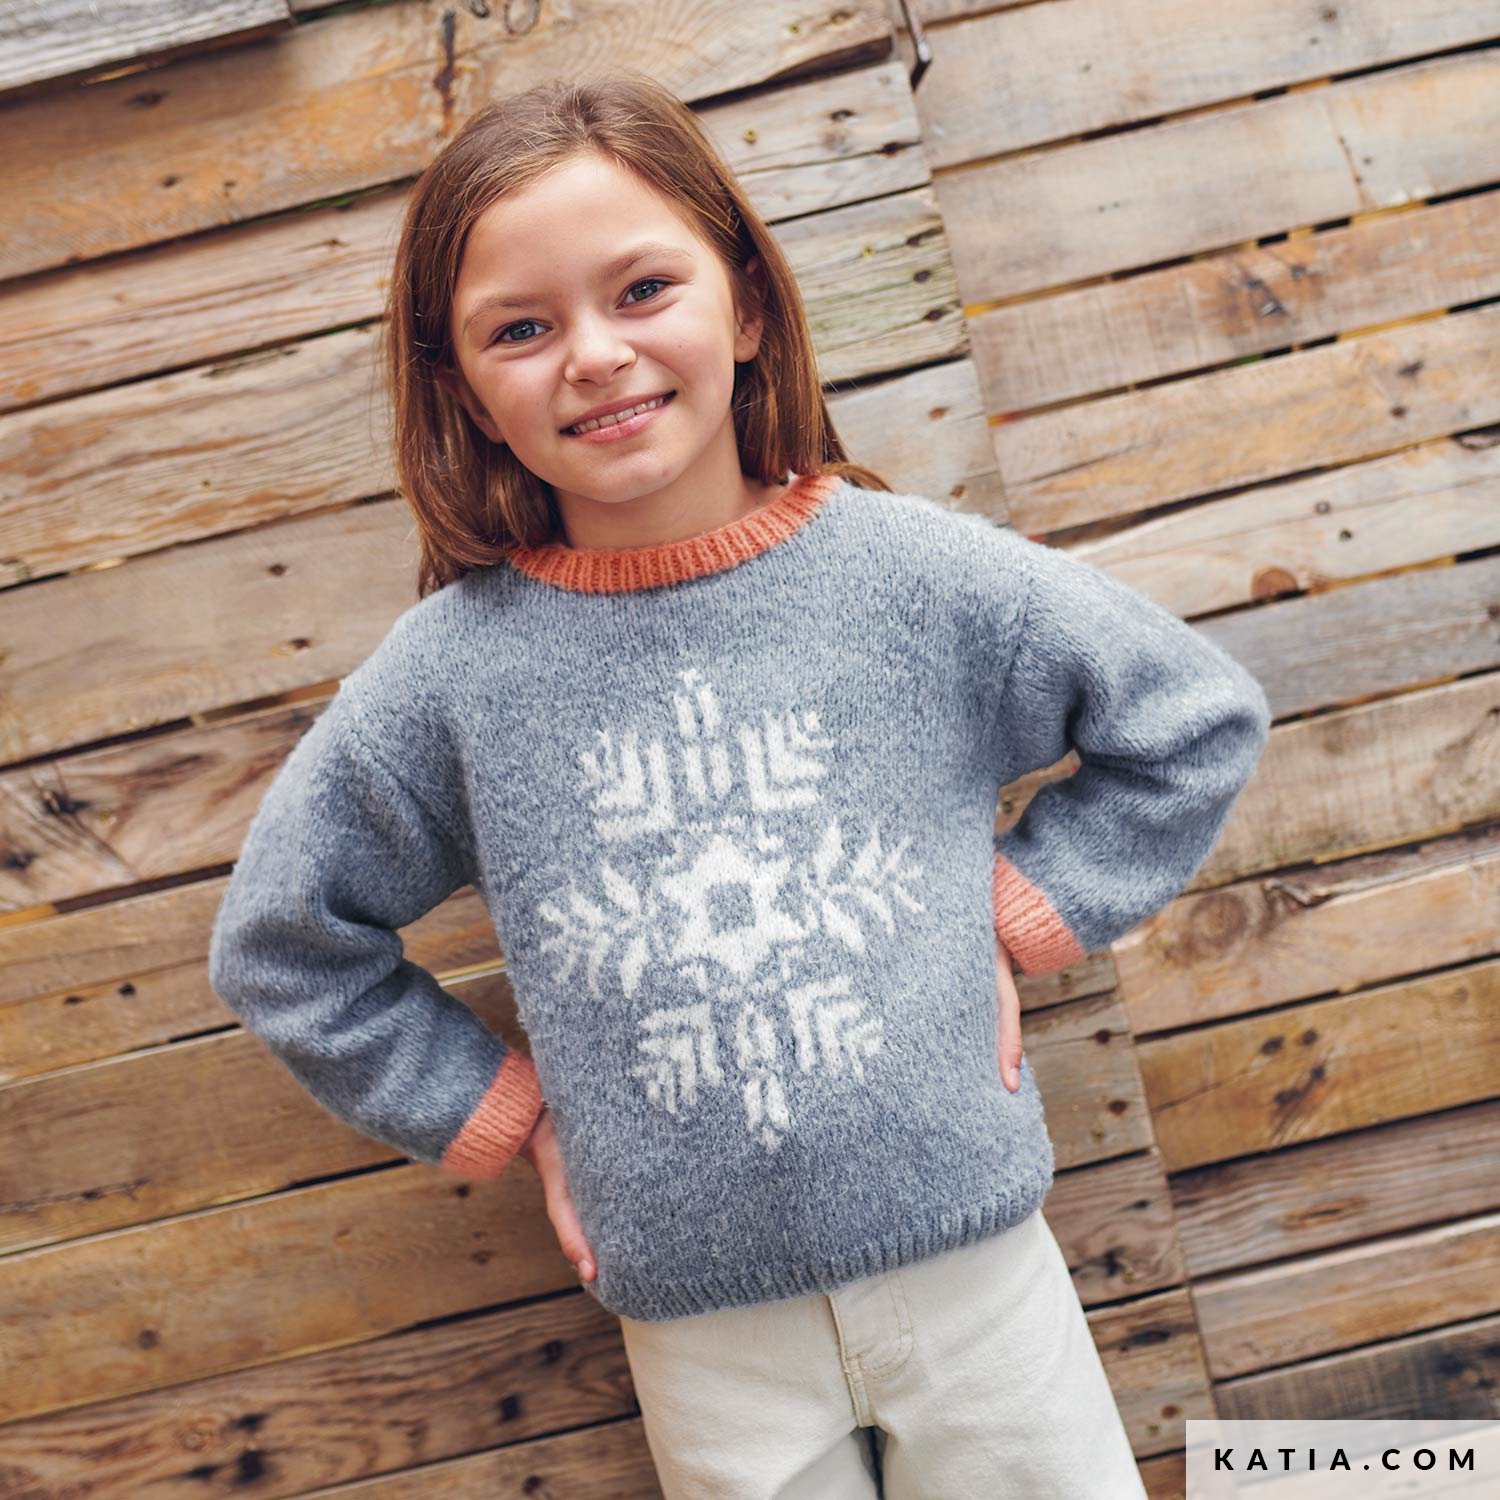 Sweater - Kids - Autumn / Winter - models & patterns | Katia.com